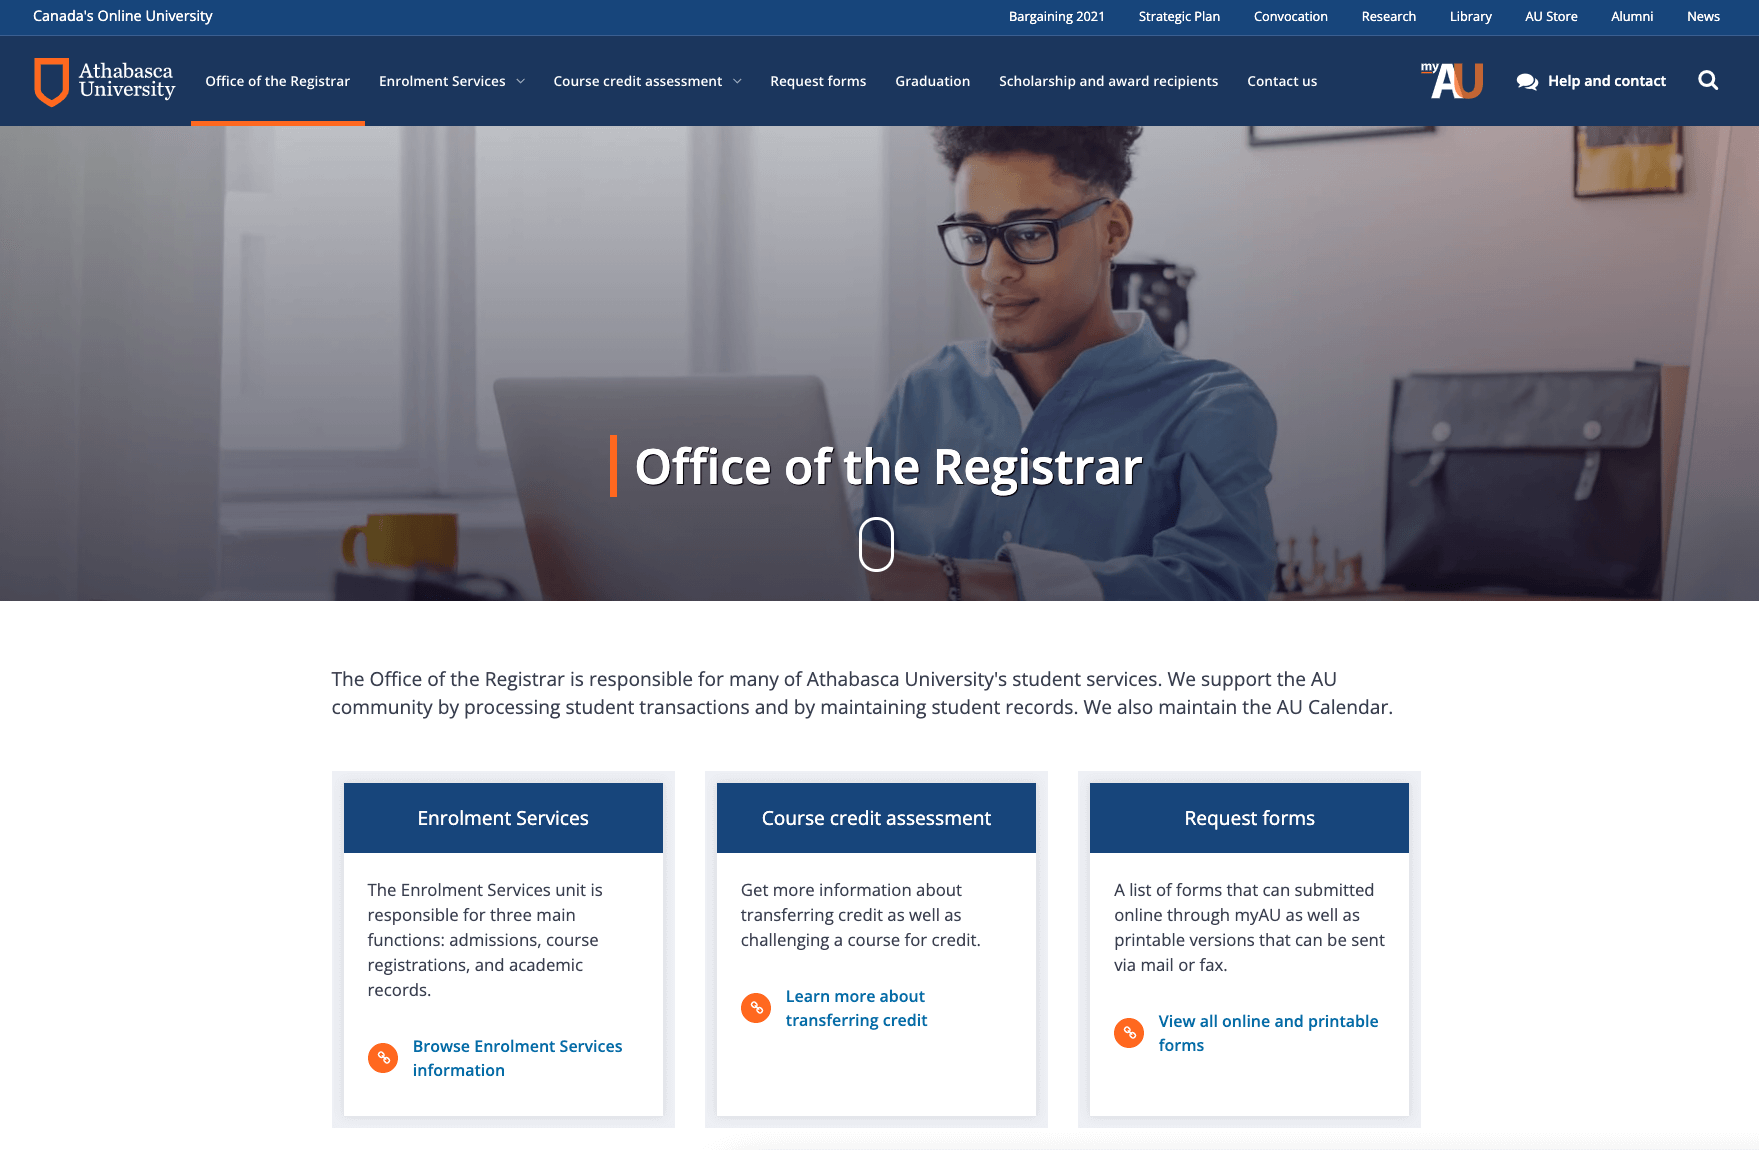 Office of the Registrar's new website